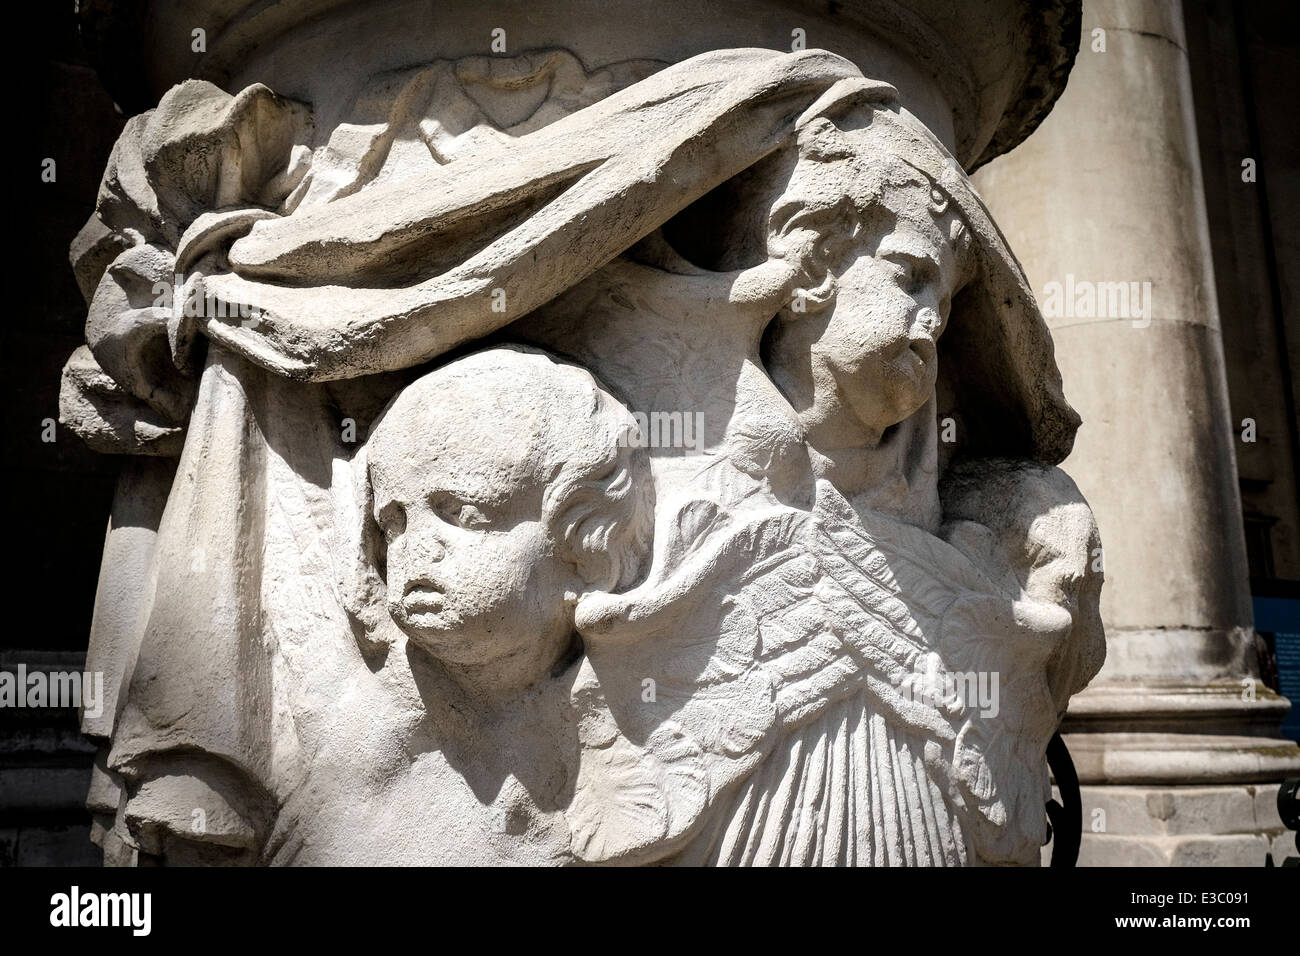 Les effets de l'altération sur les sculptures en pierre érodées de l'église St Alfeges de Greenwich à Londres. Banque D'Images